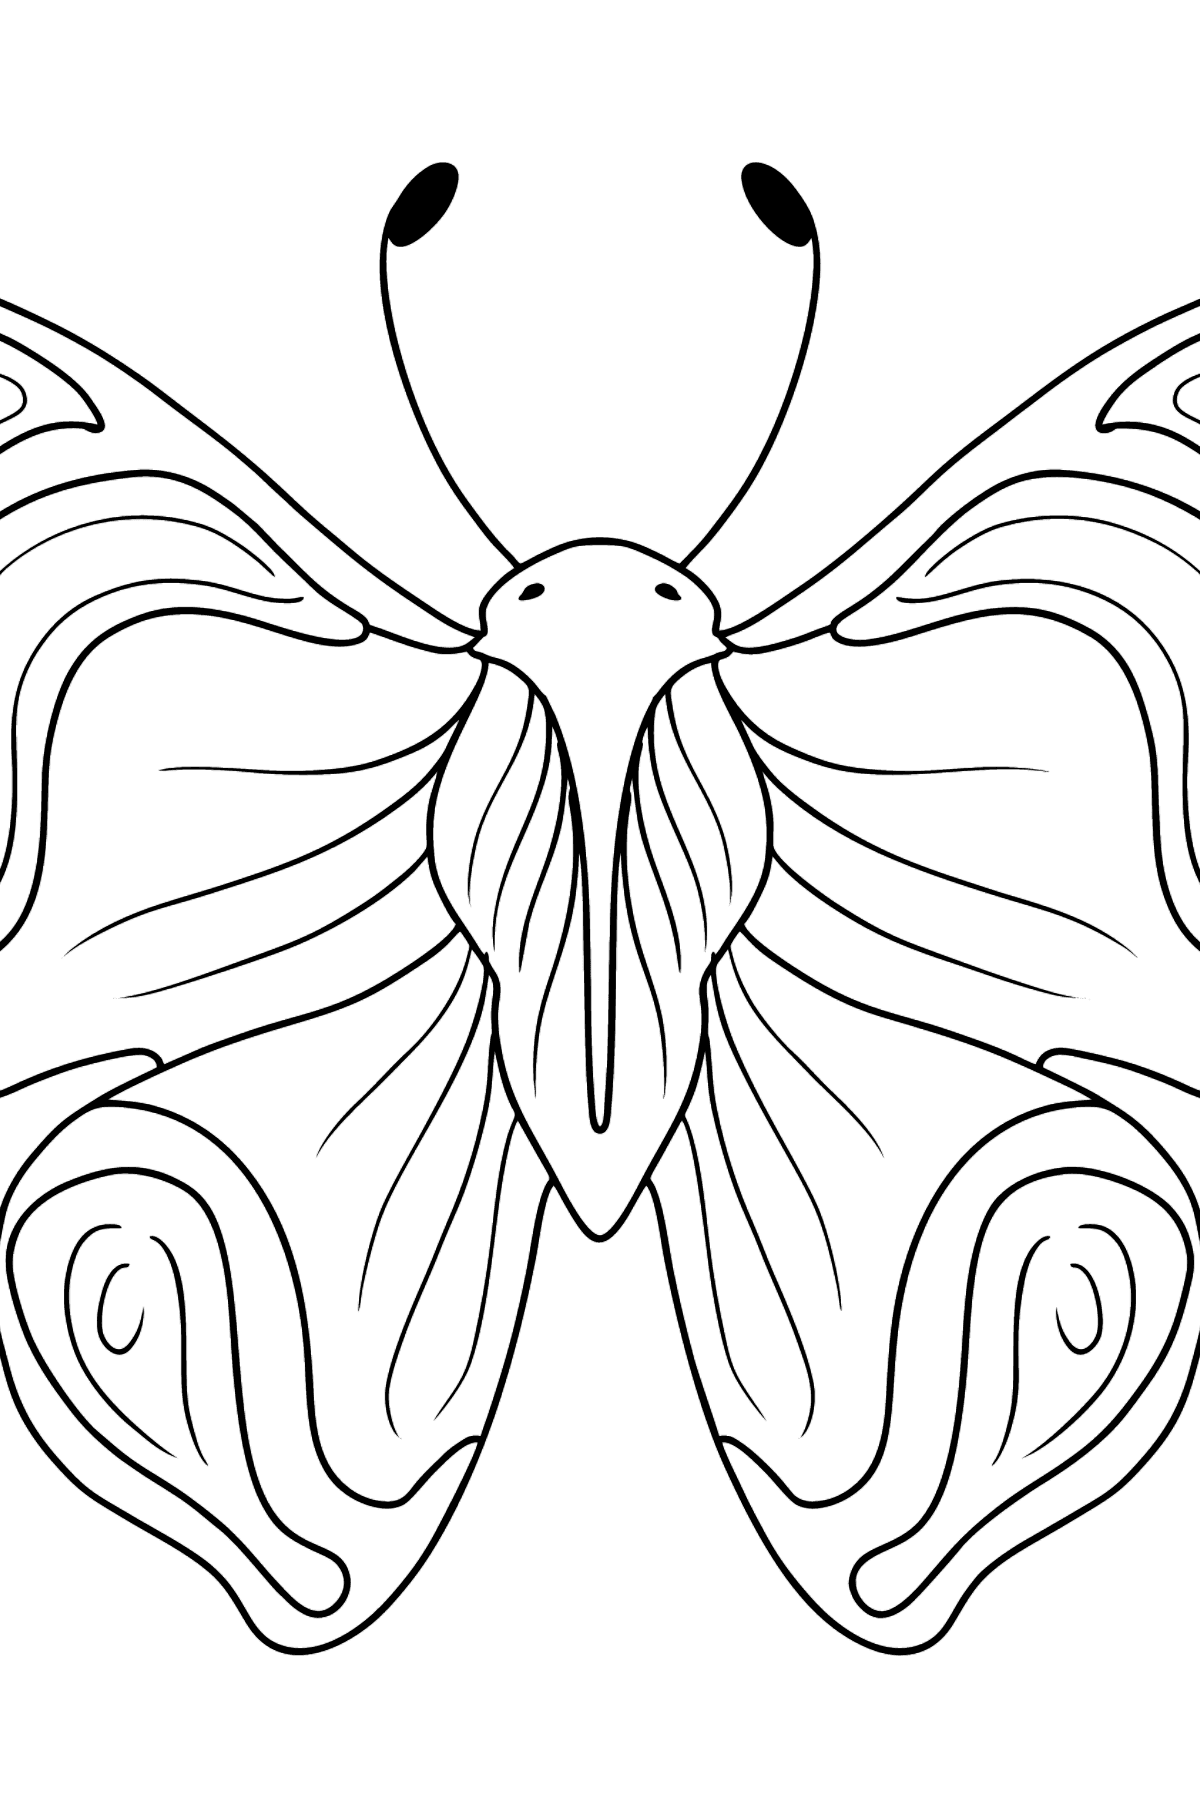 Tegning til fargelegging sommerfugladmiral - Tegninger til fargelegging for barn